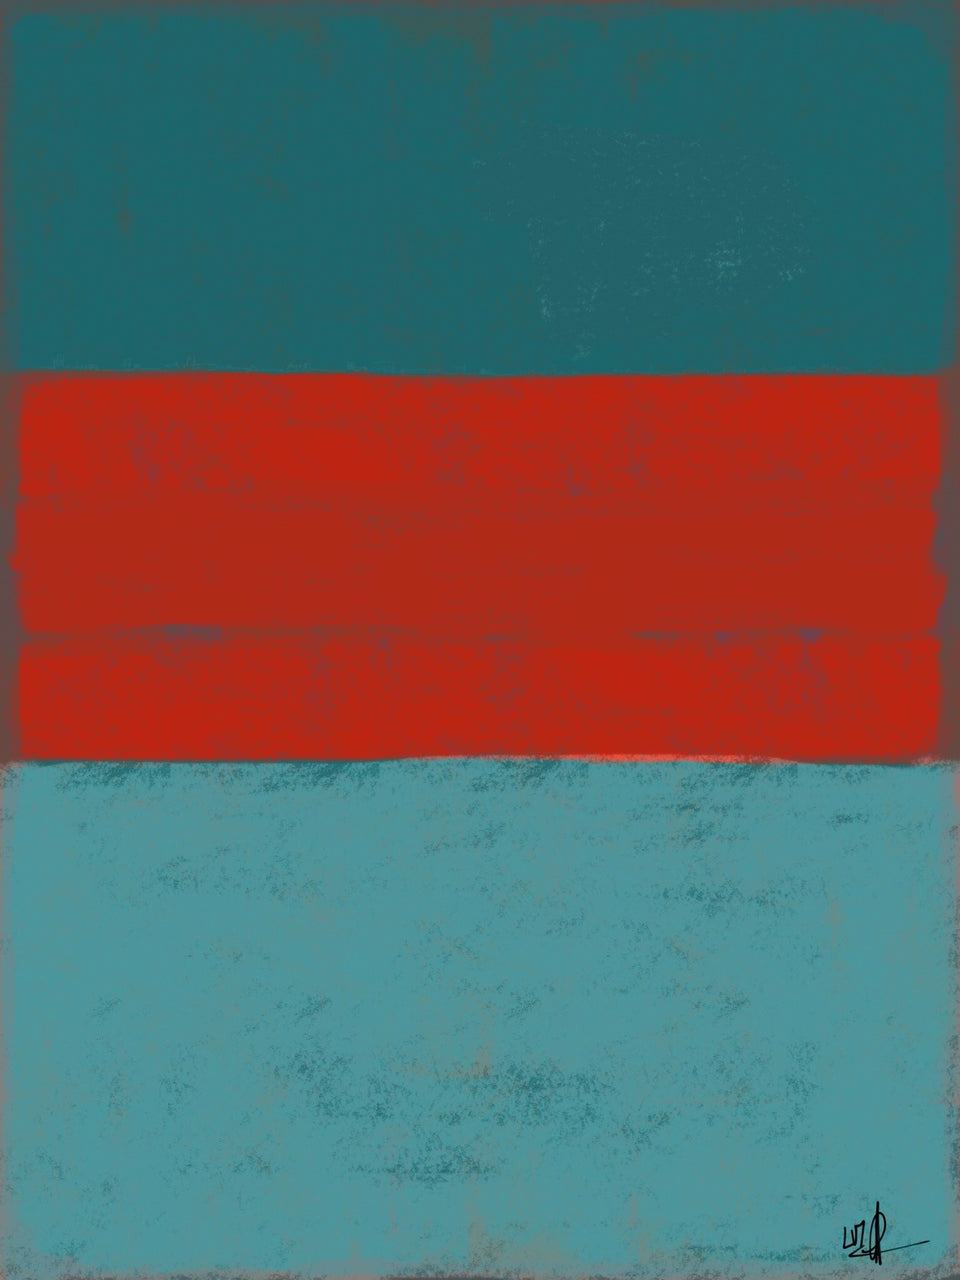  Couleurs Rothko de rouge sur bleu gris - Peinture abstraite  artiste peintre Ludwig Mario  galerie TACT Art abstrait & contemporain